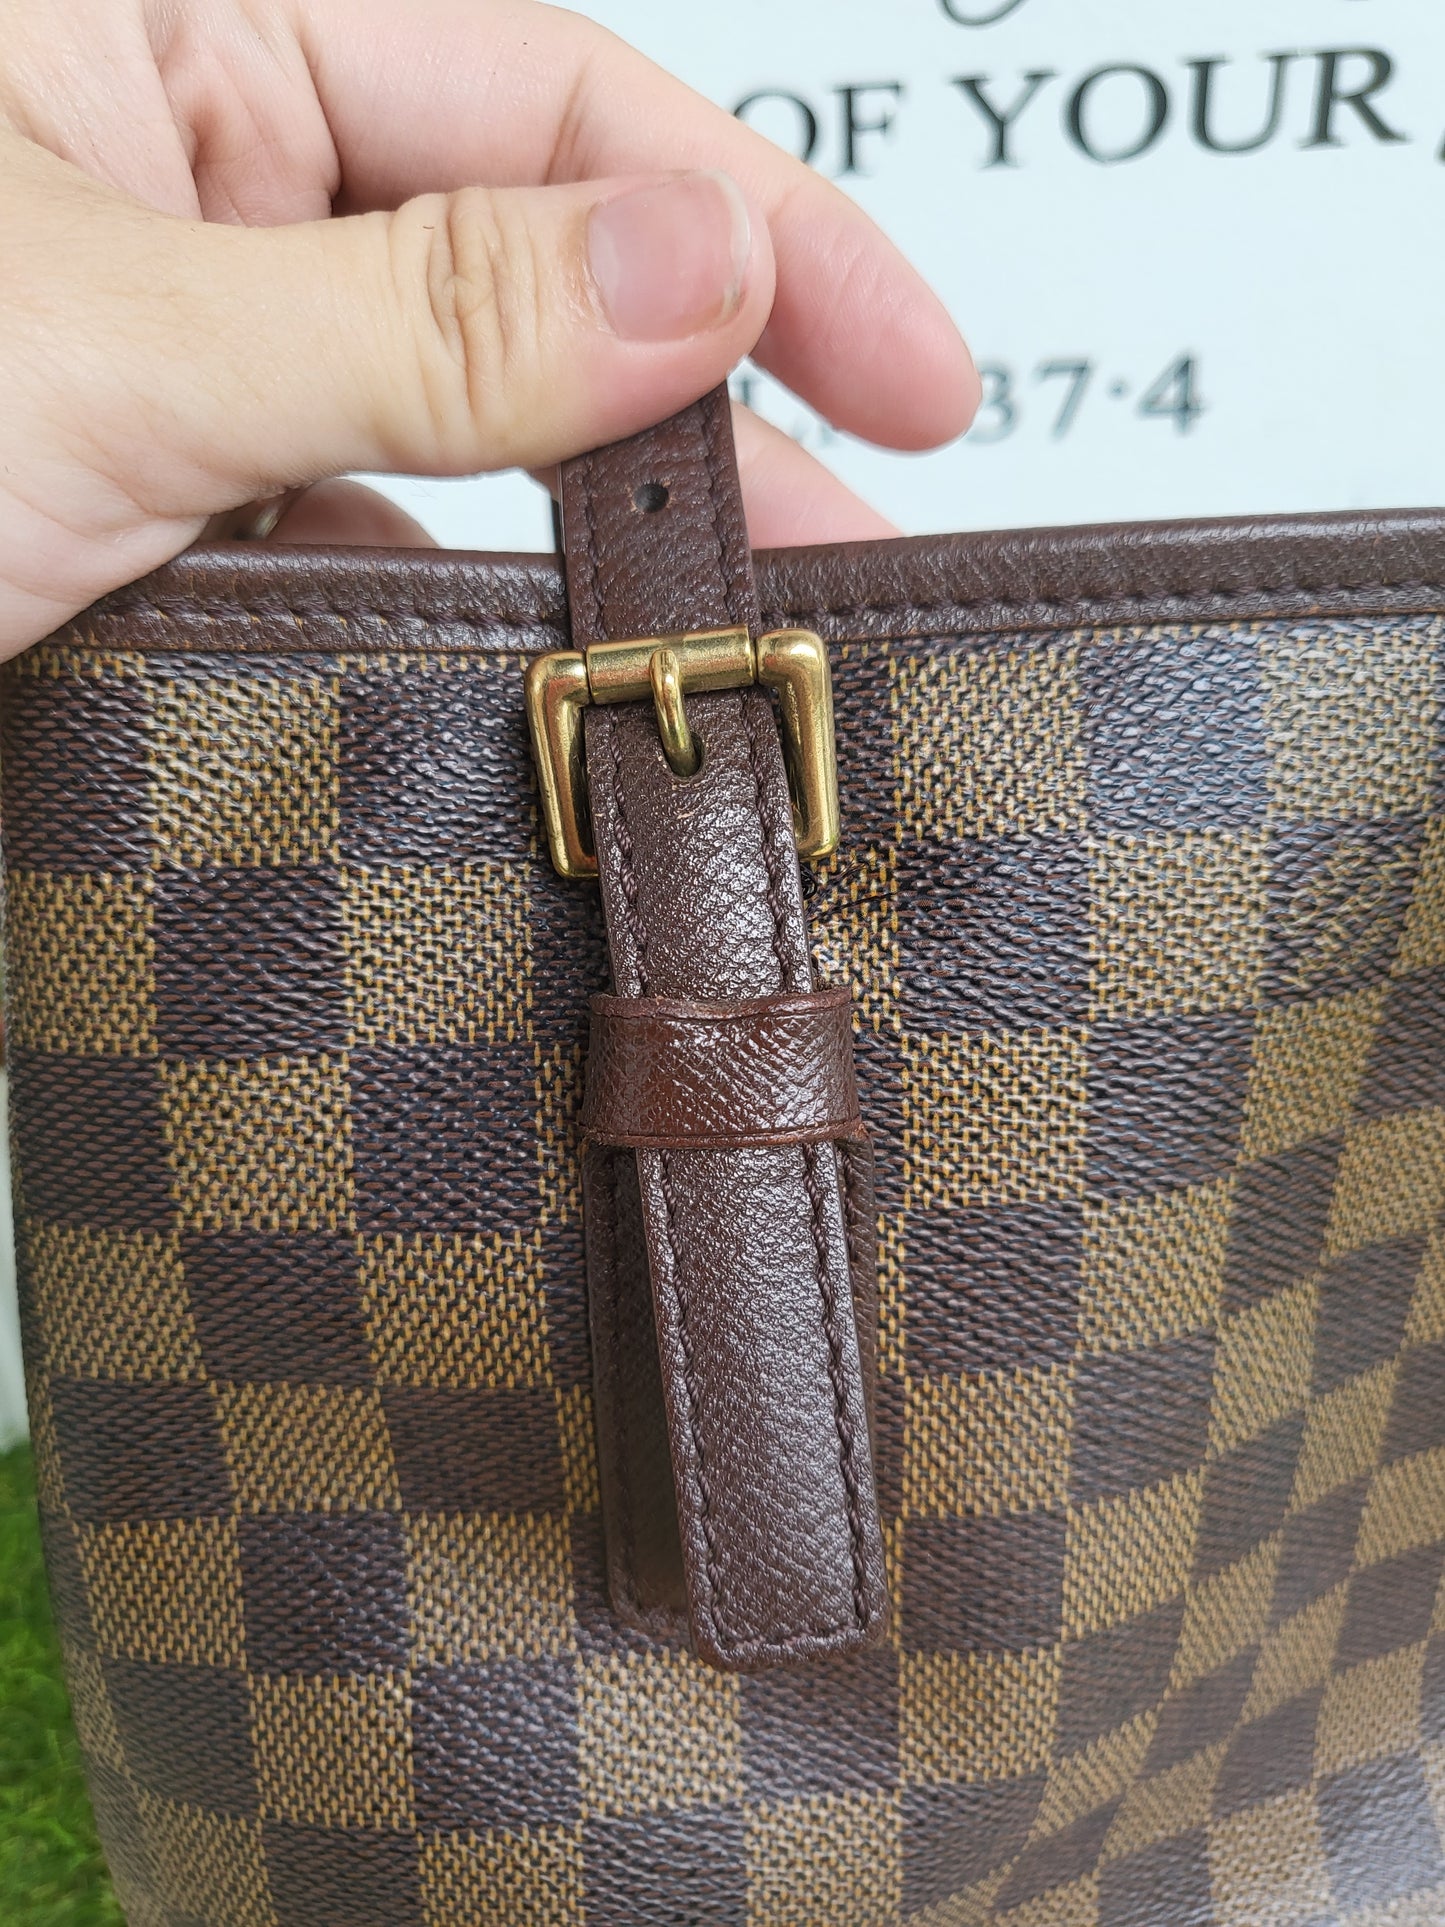 Louis Vuitton Bucket Bag